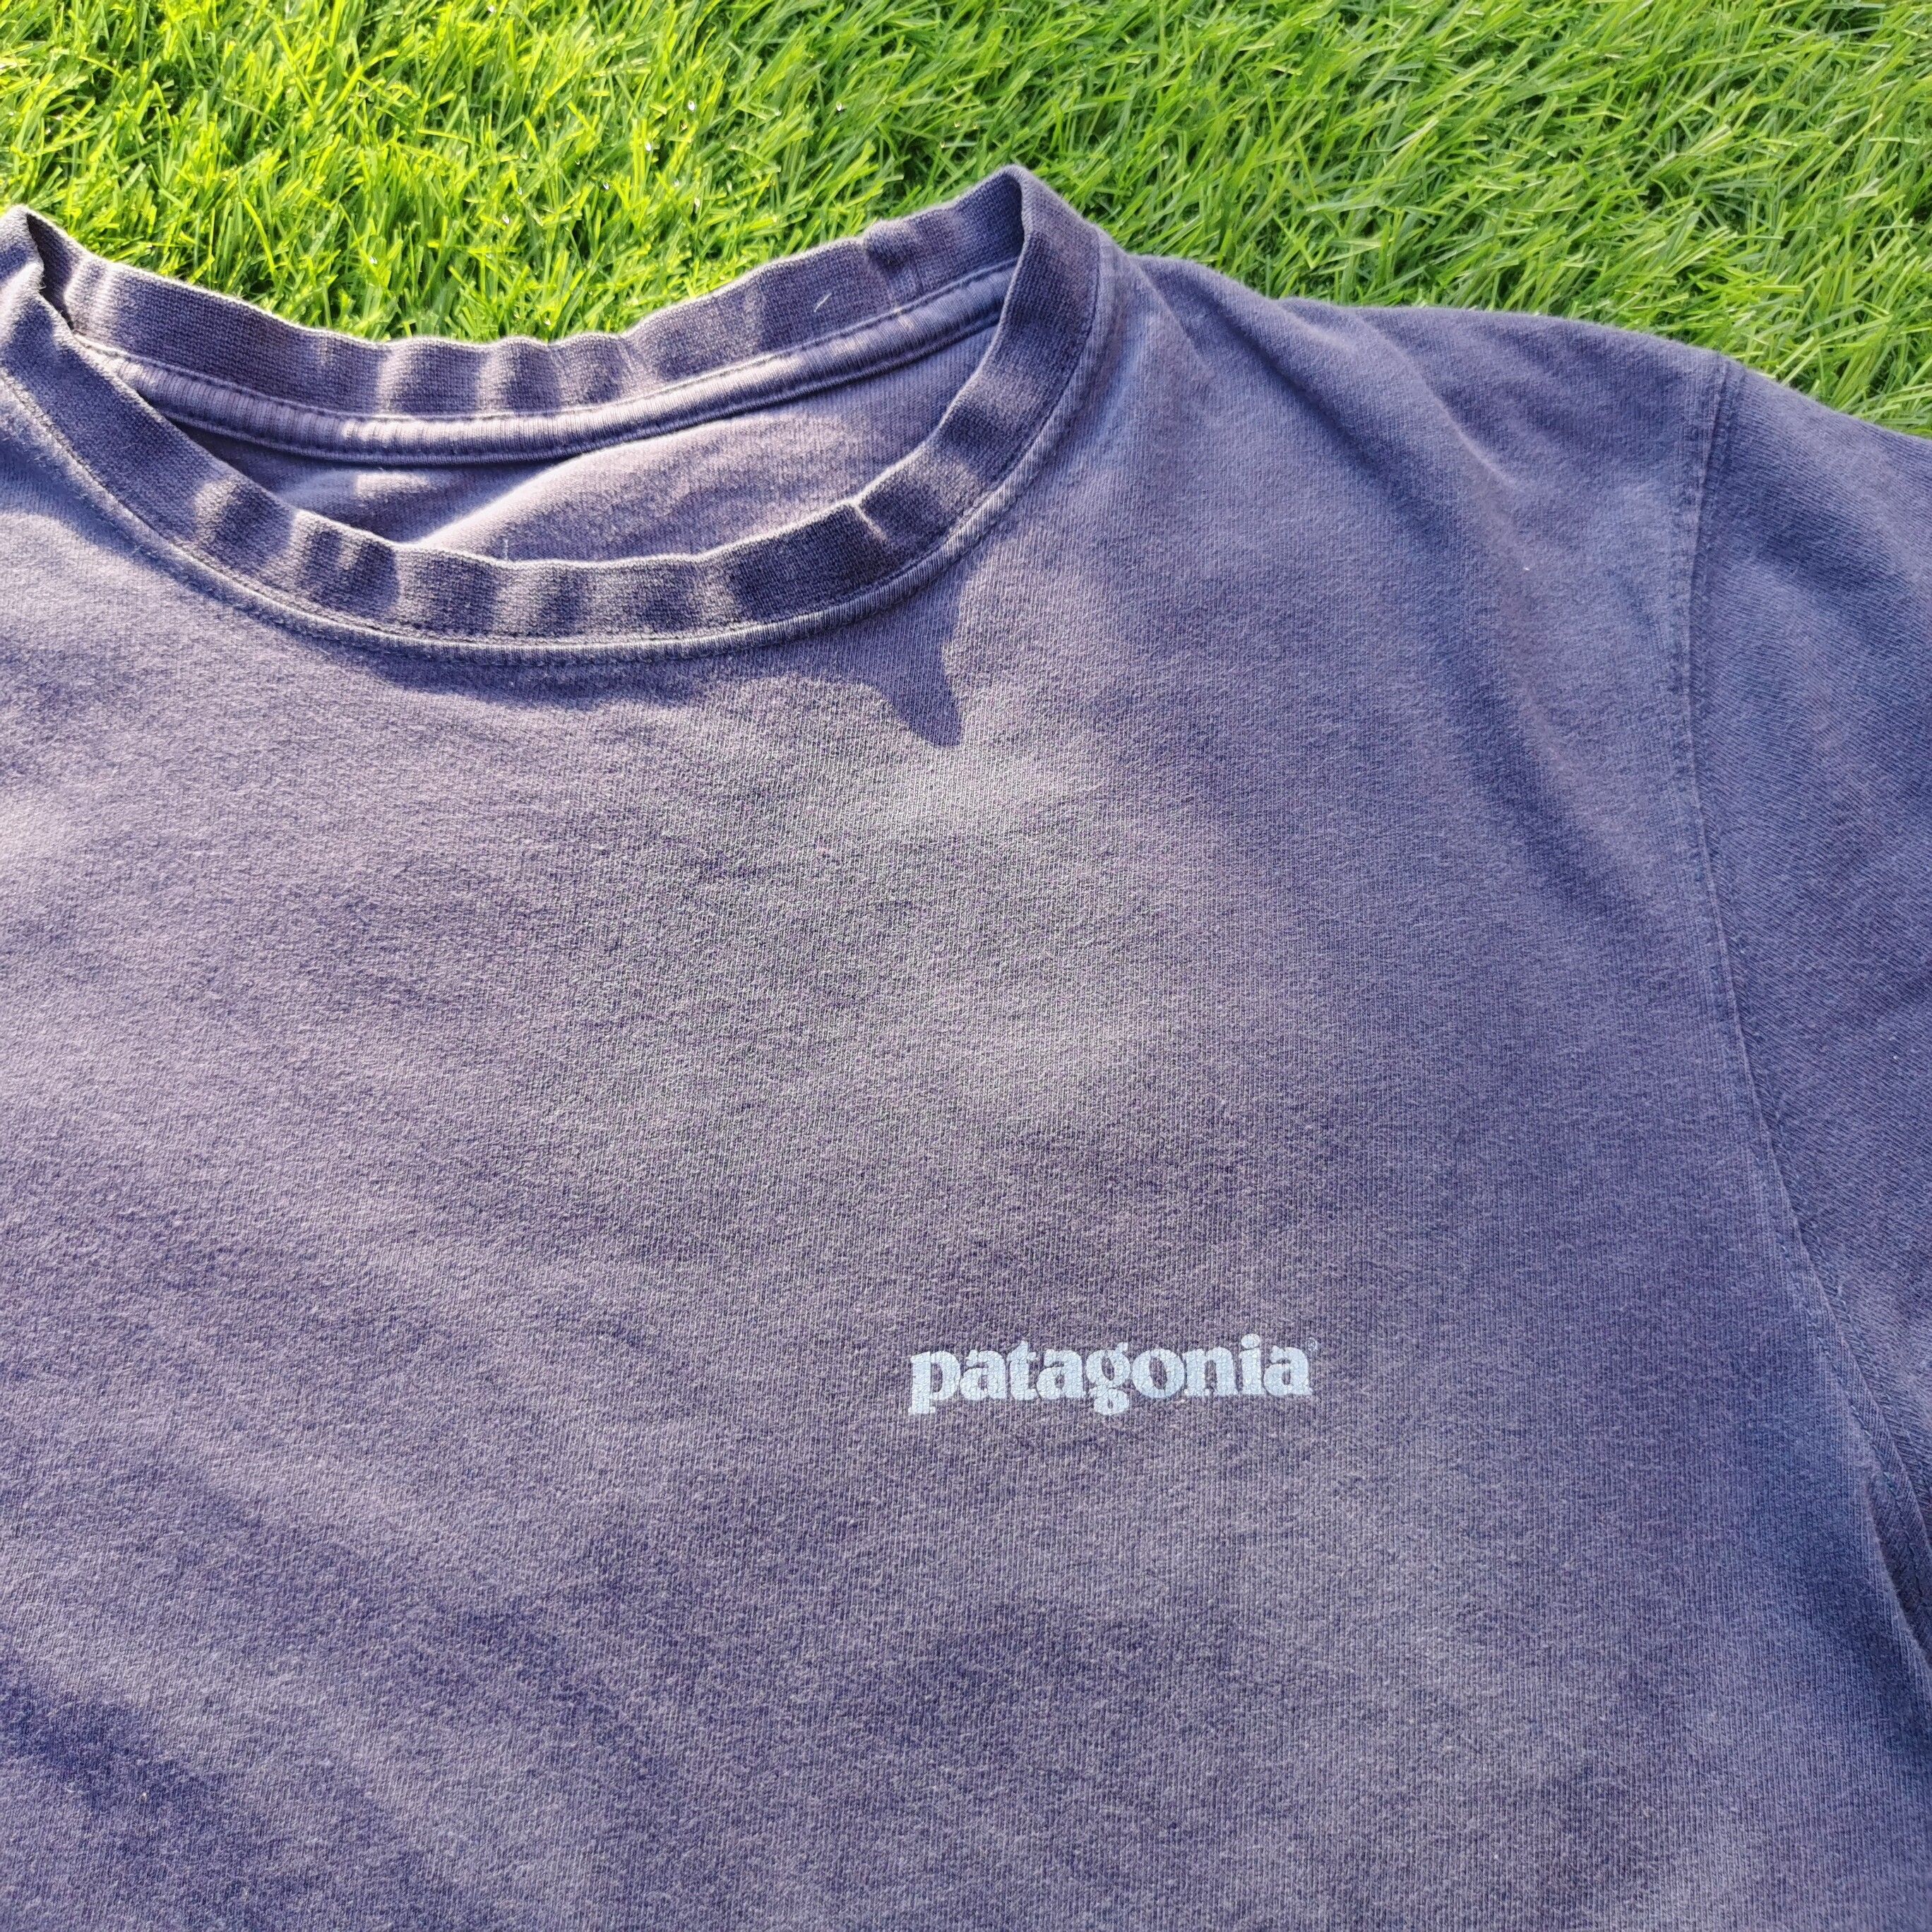 Patagonia Big Print Tshirt - 4